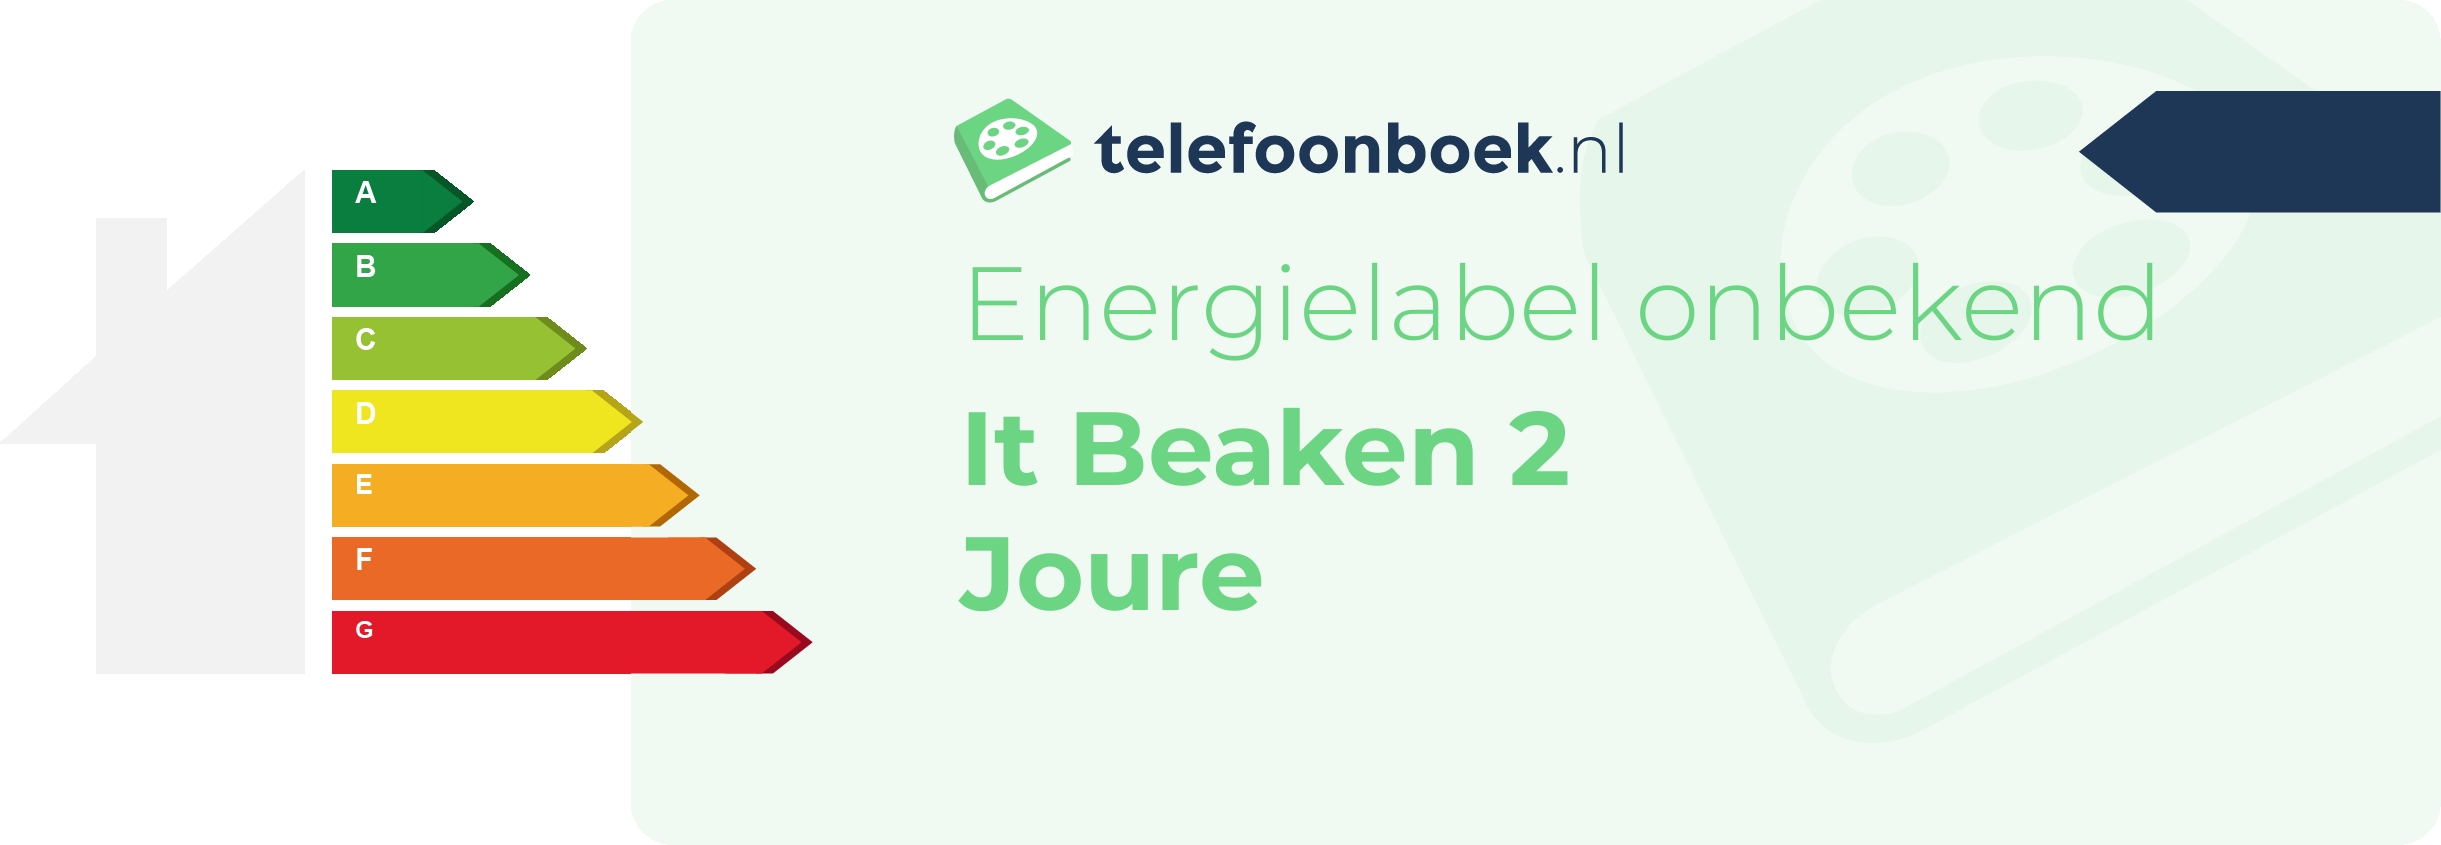 Energielabel It Beaken 2 Joure